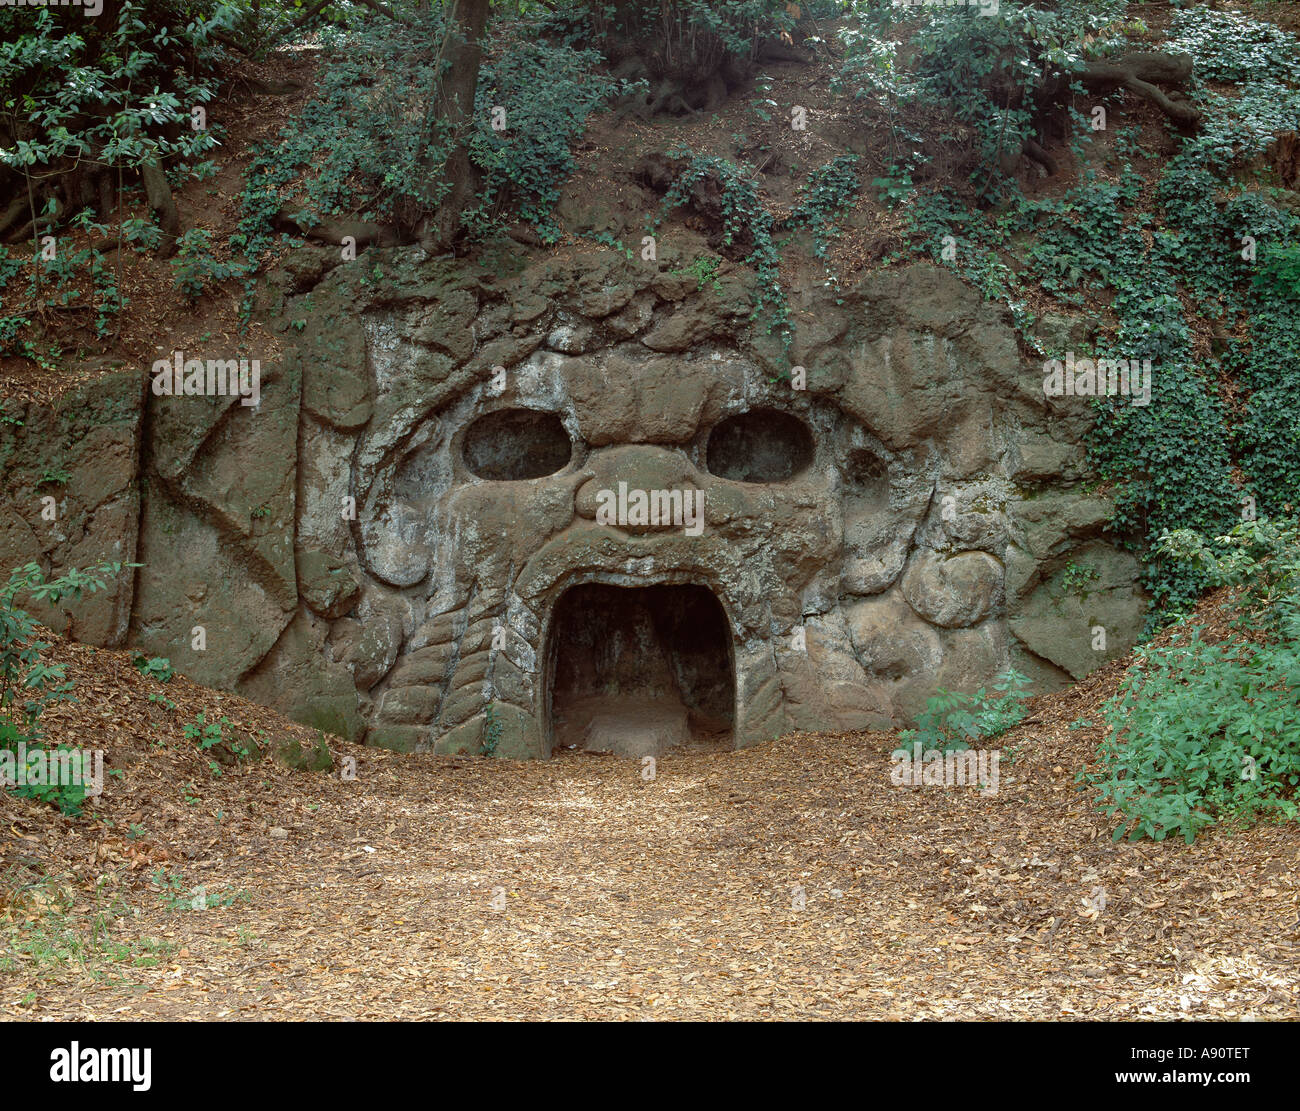 Villa Aldobrandini, Frascati, Italien. Grotte in der Form einer grotesken Maske, in den frühen 17c Gärten von Carlo Maderno Stockfoto